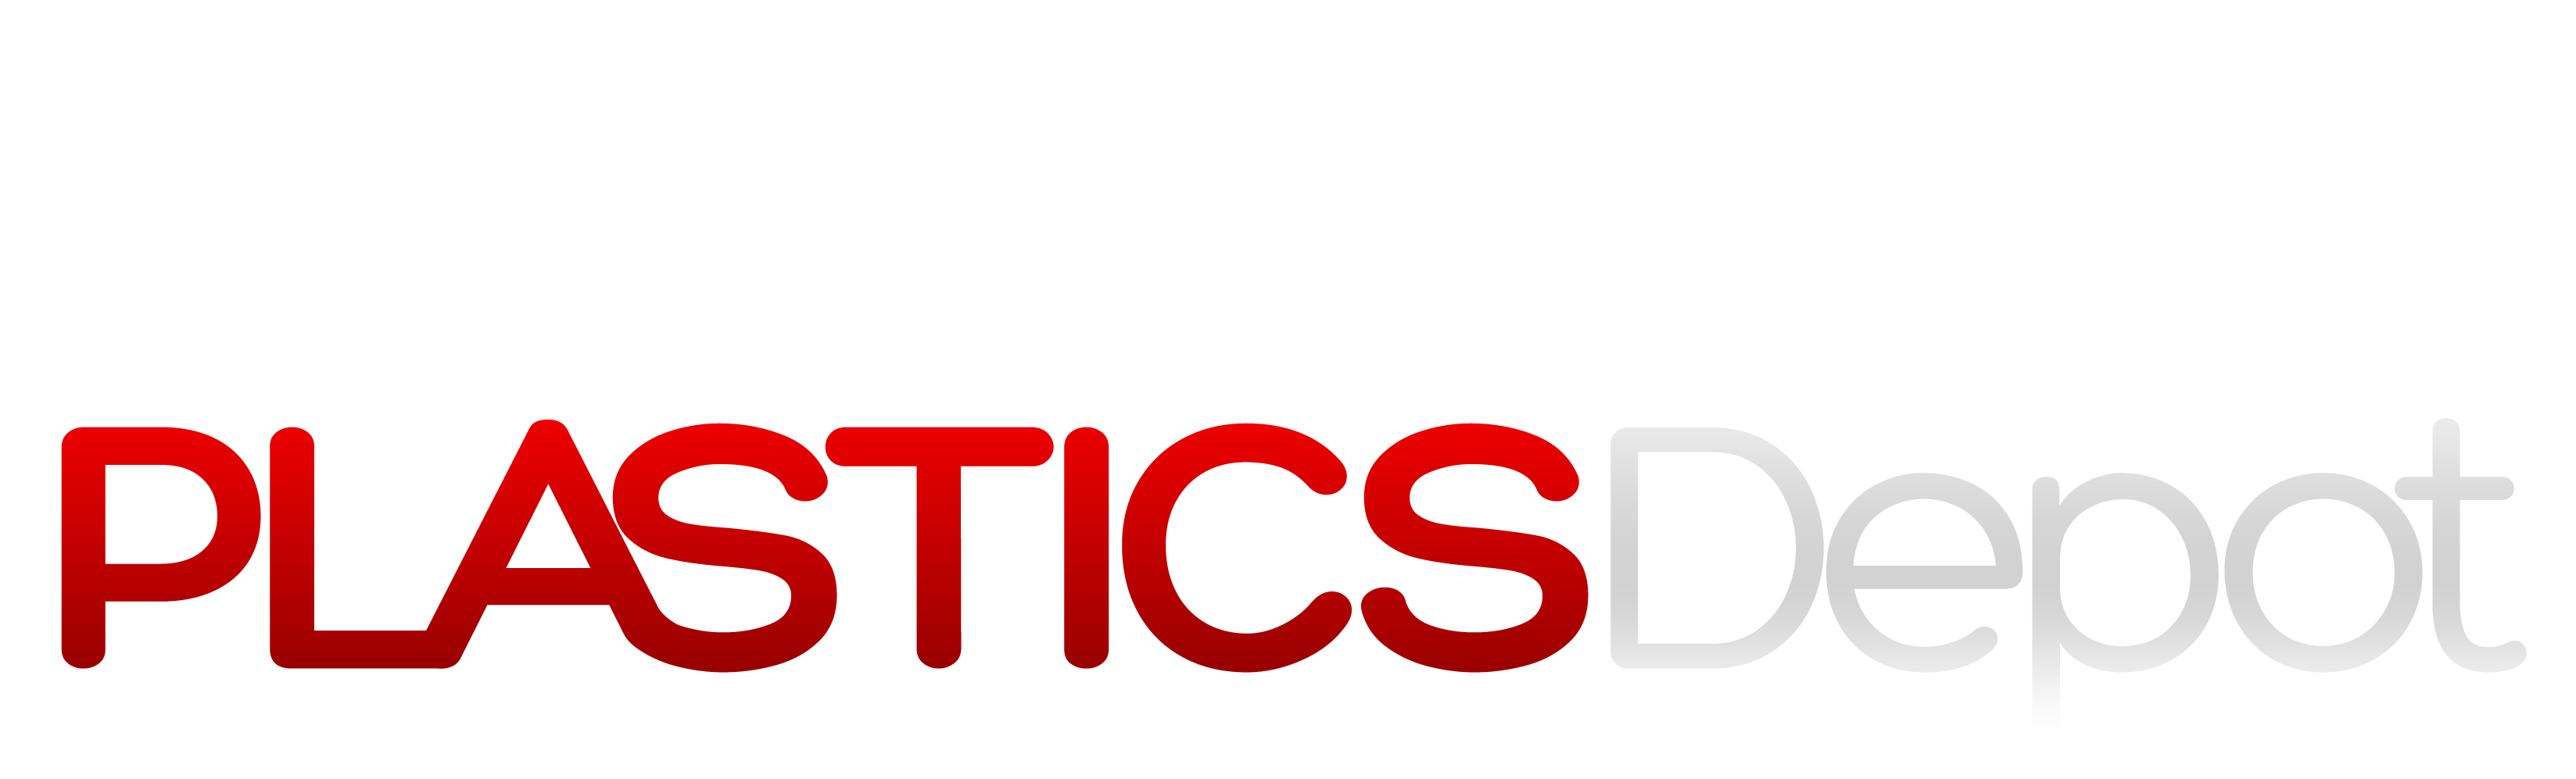 Commercial Plastics Depot - Logo